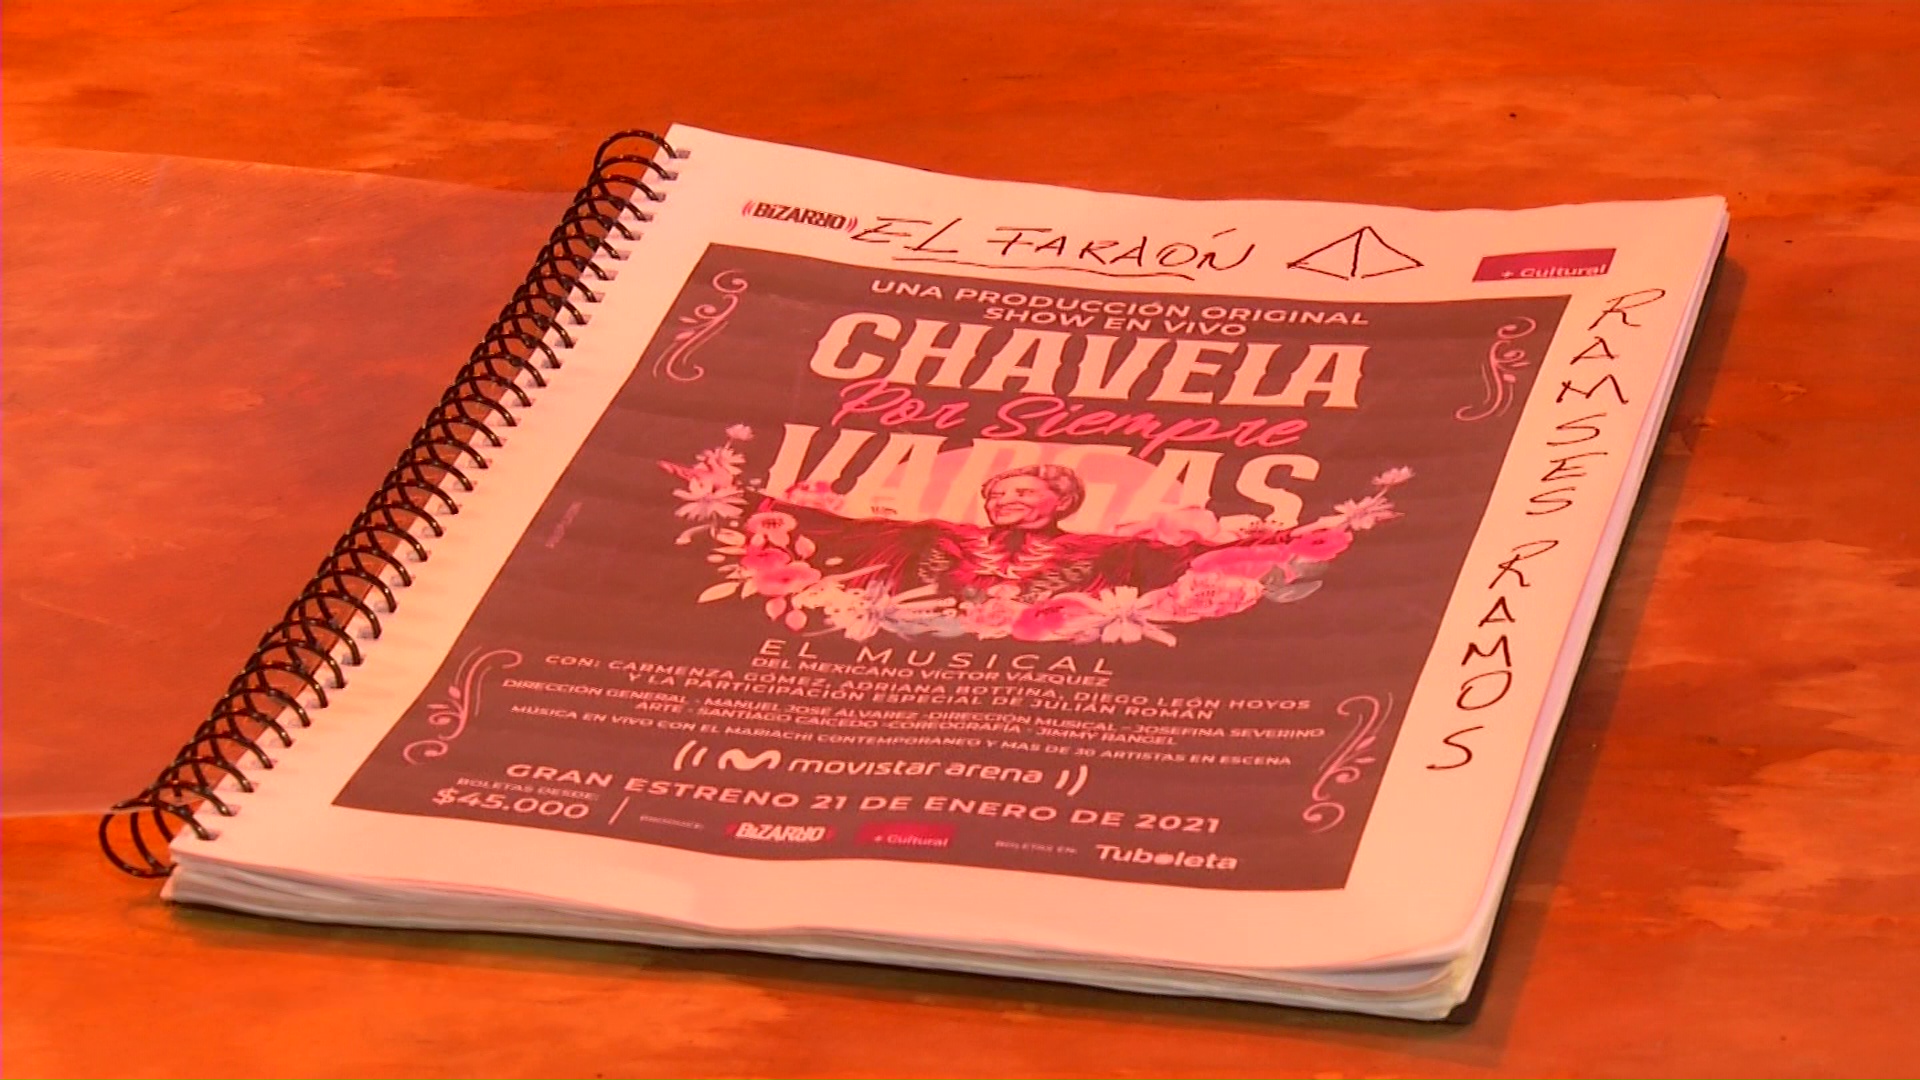 28 actores en musical sobre Chavela Vargas